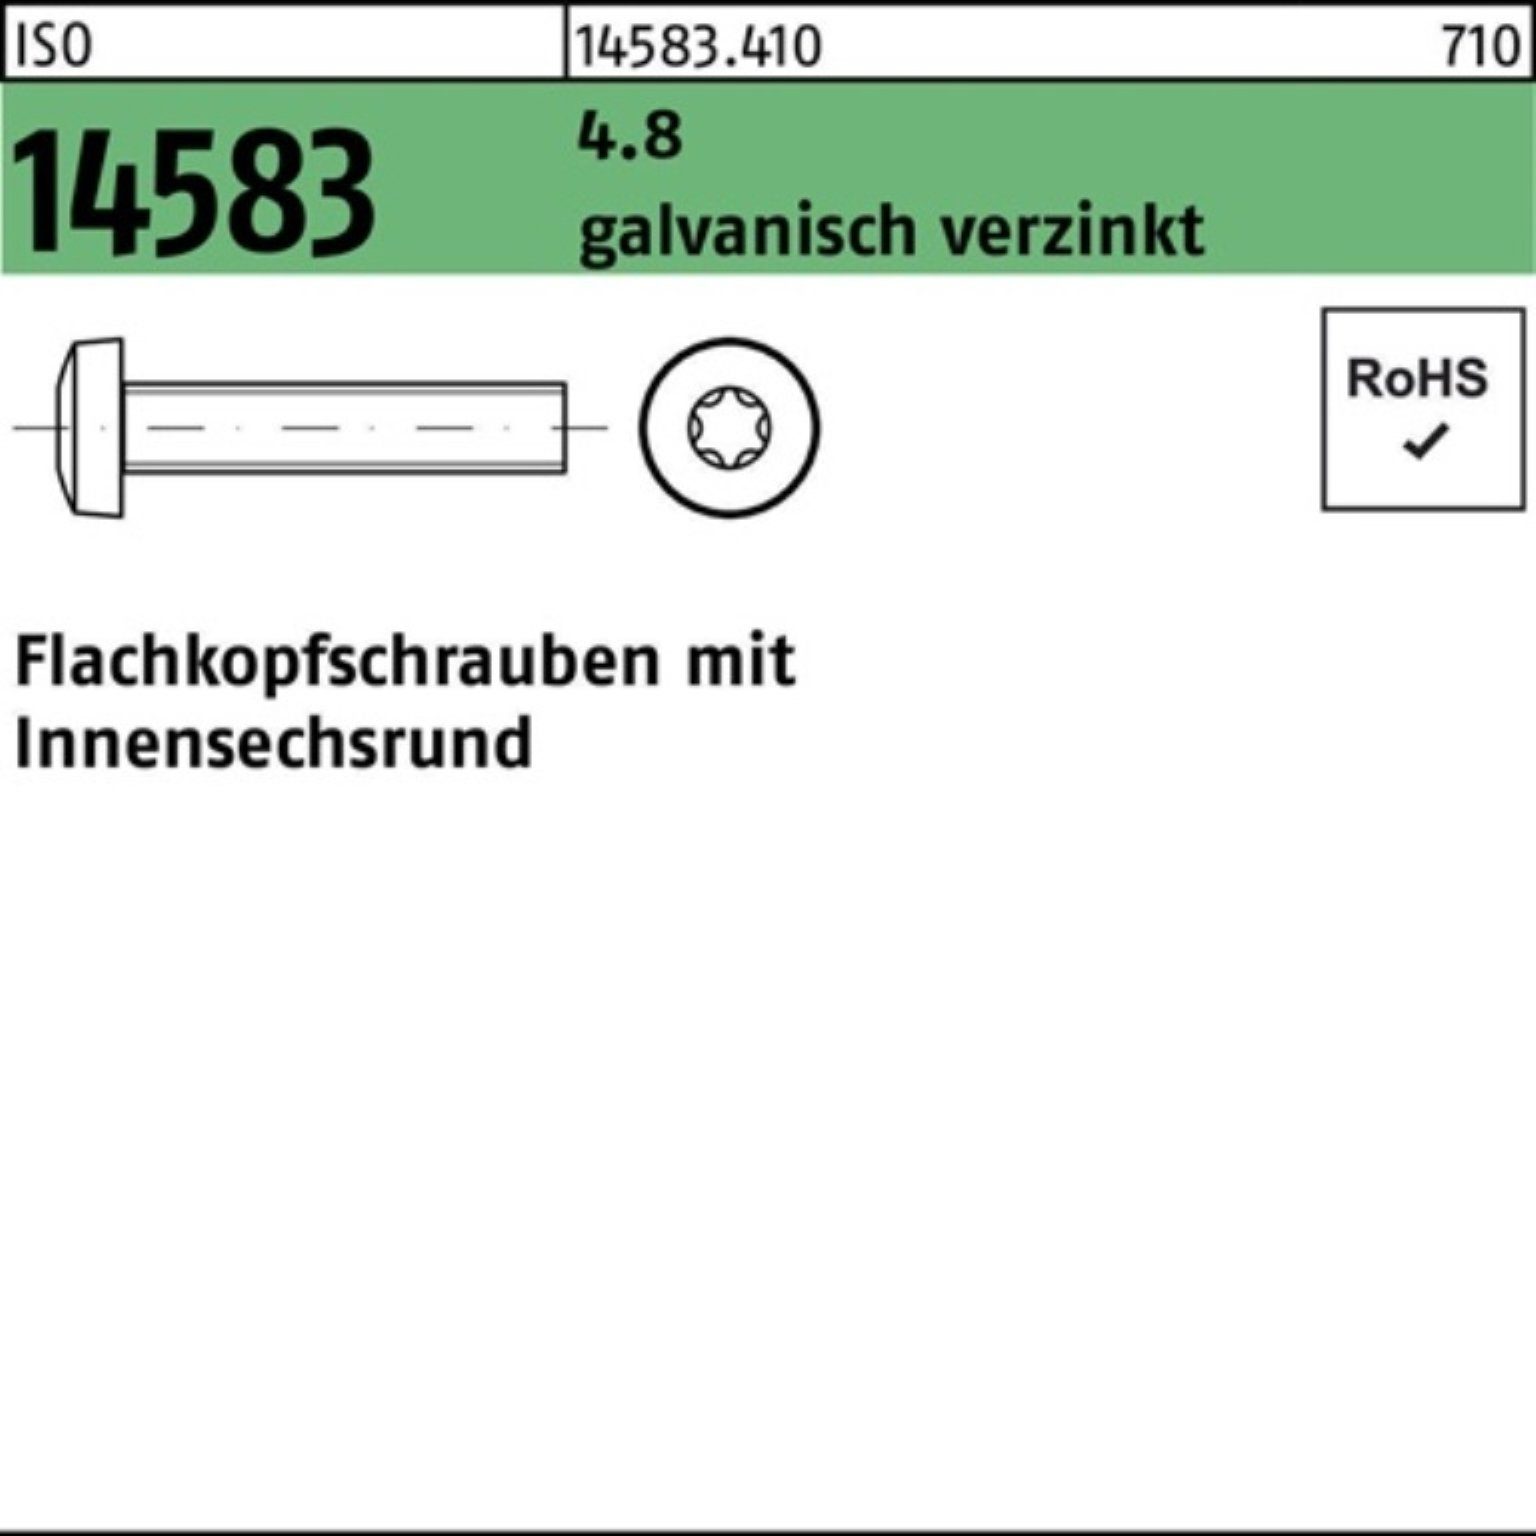 galv.verz. Schraube Flachkopfschraube Reyher M5x8 14583 4.8 200er 200St. ISR Pack ISO